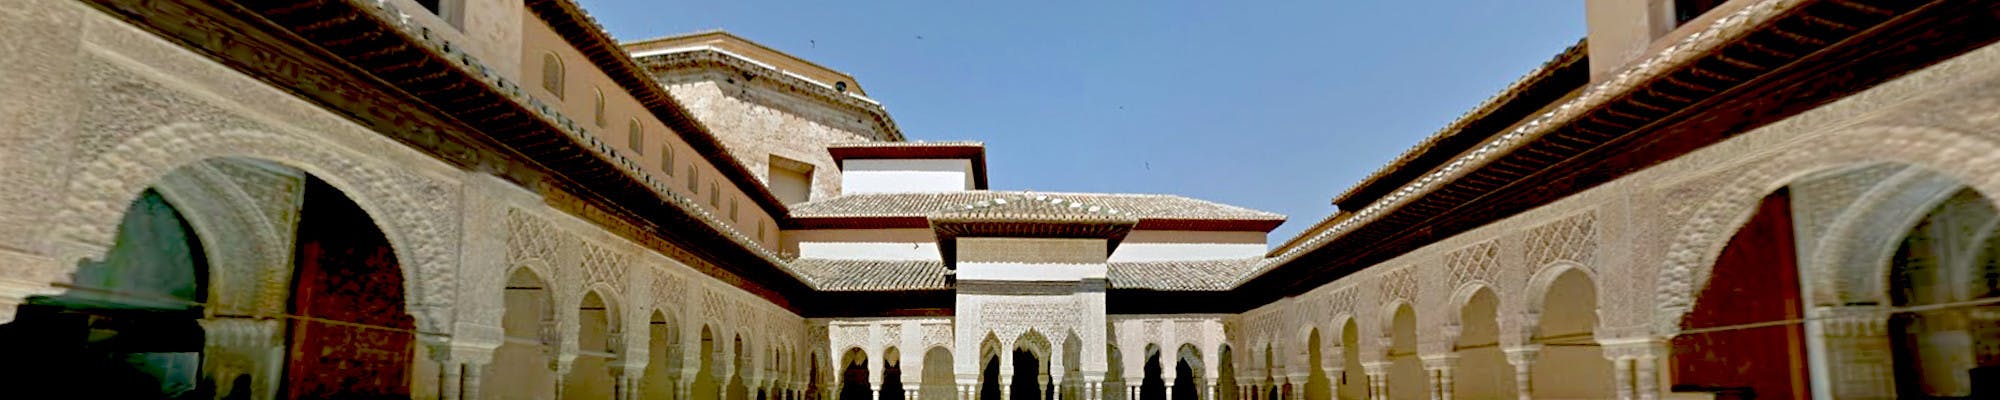 Tour virtuale dell'Alhambra da casa